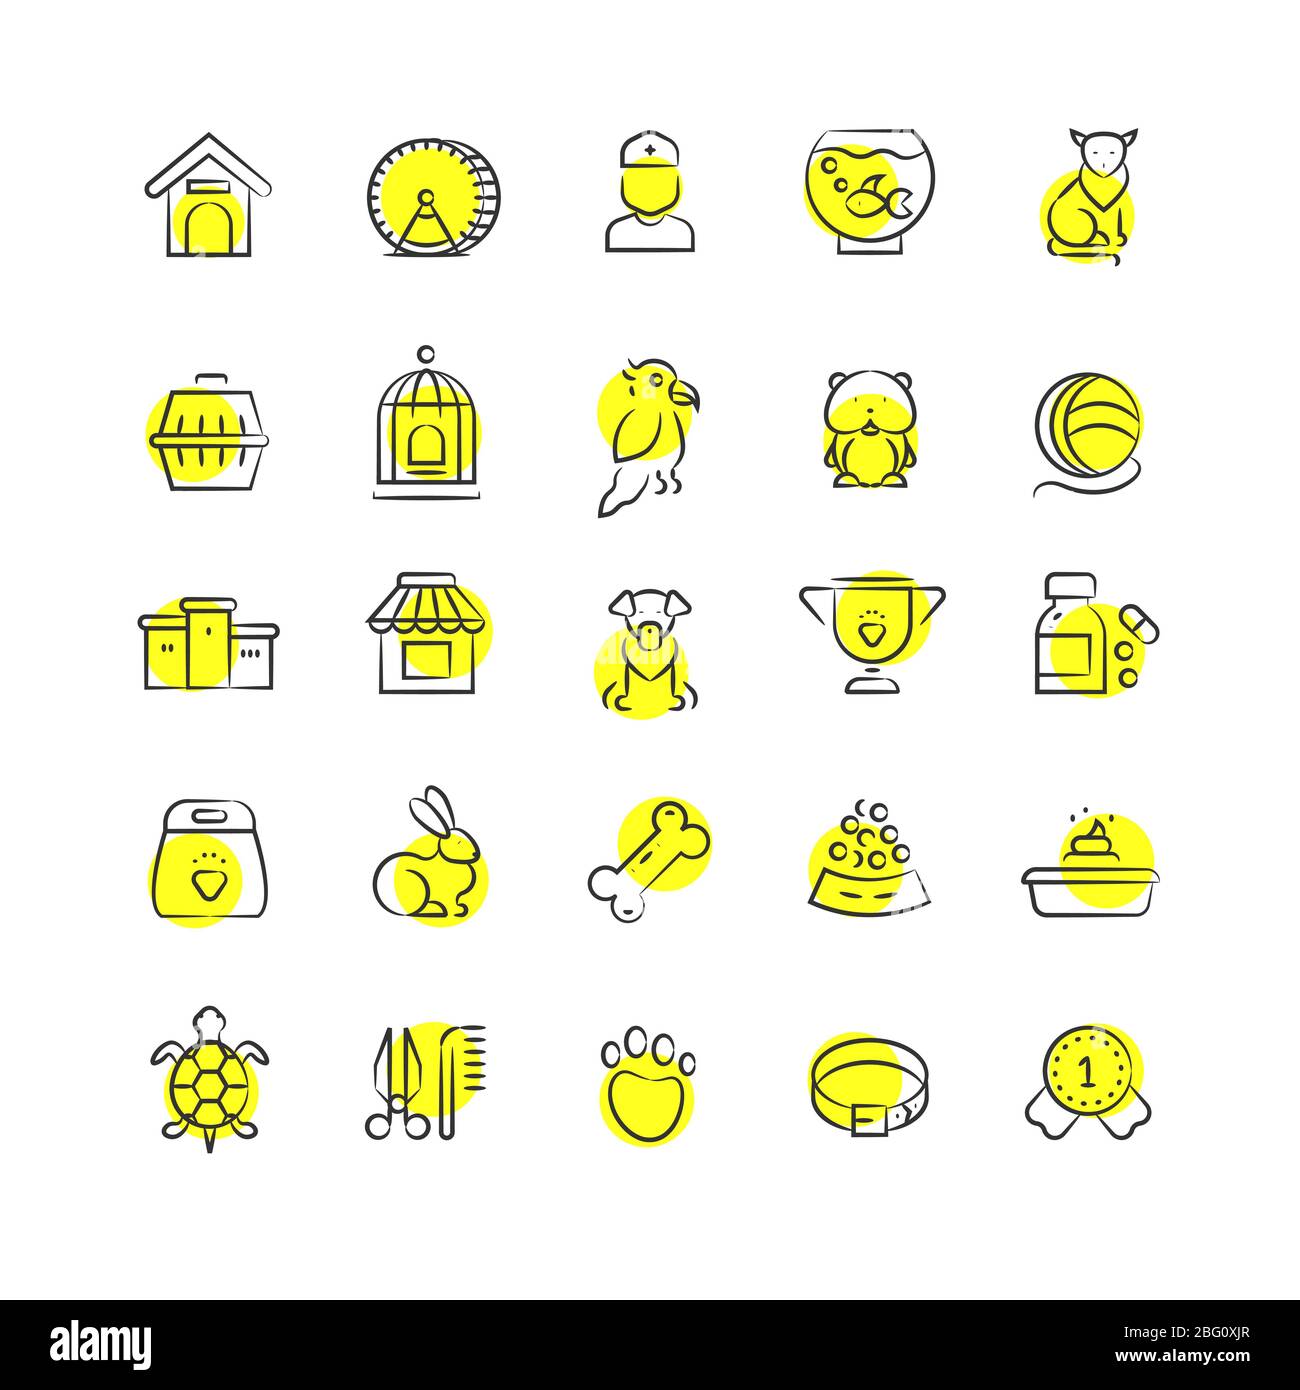 Negozio di animali domestici, animali e accessori per animali domestici icone lineari con tondi gialli isolati su sfondo bianco. Illustrazione vettoriale Illustrazione Vettoriale